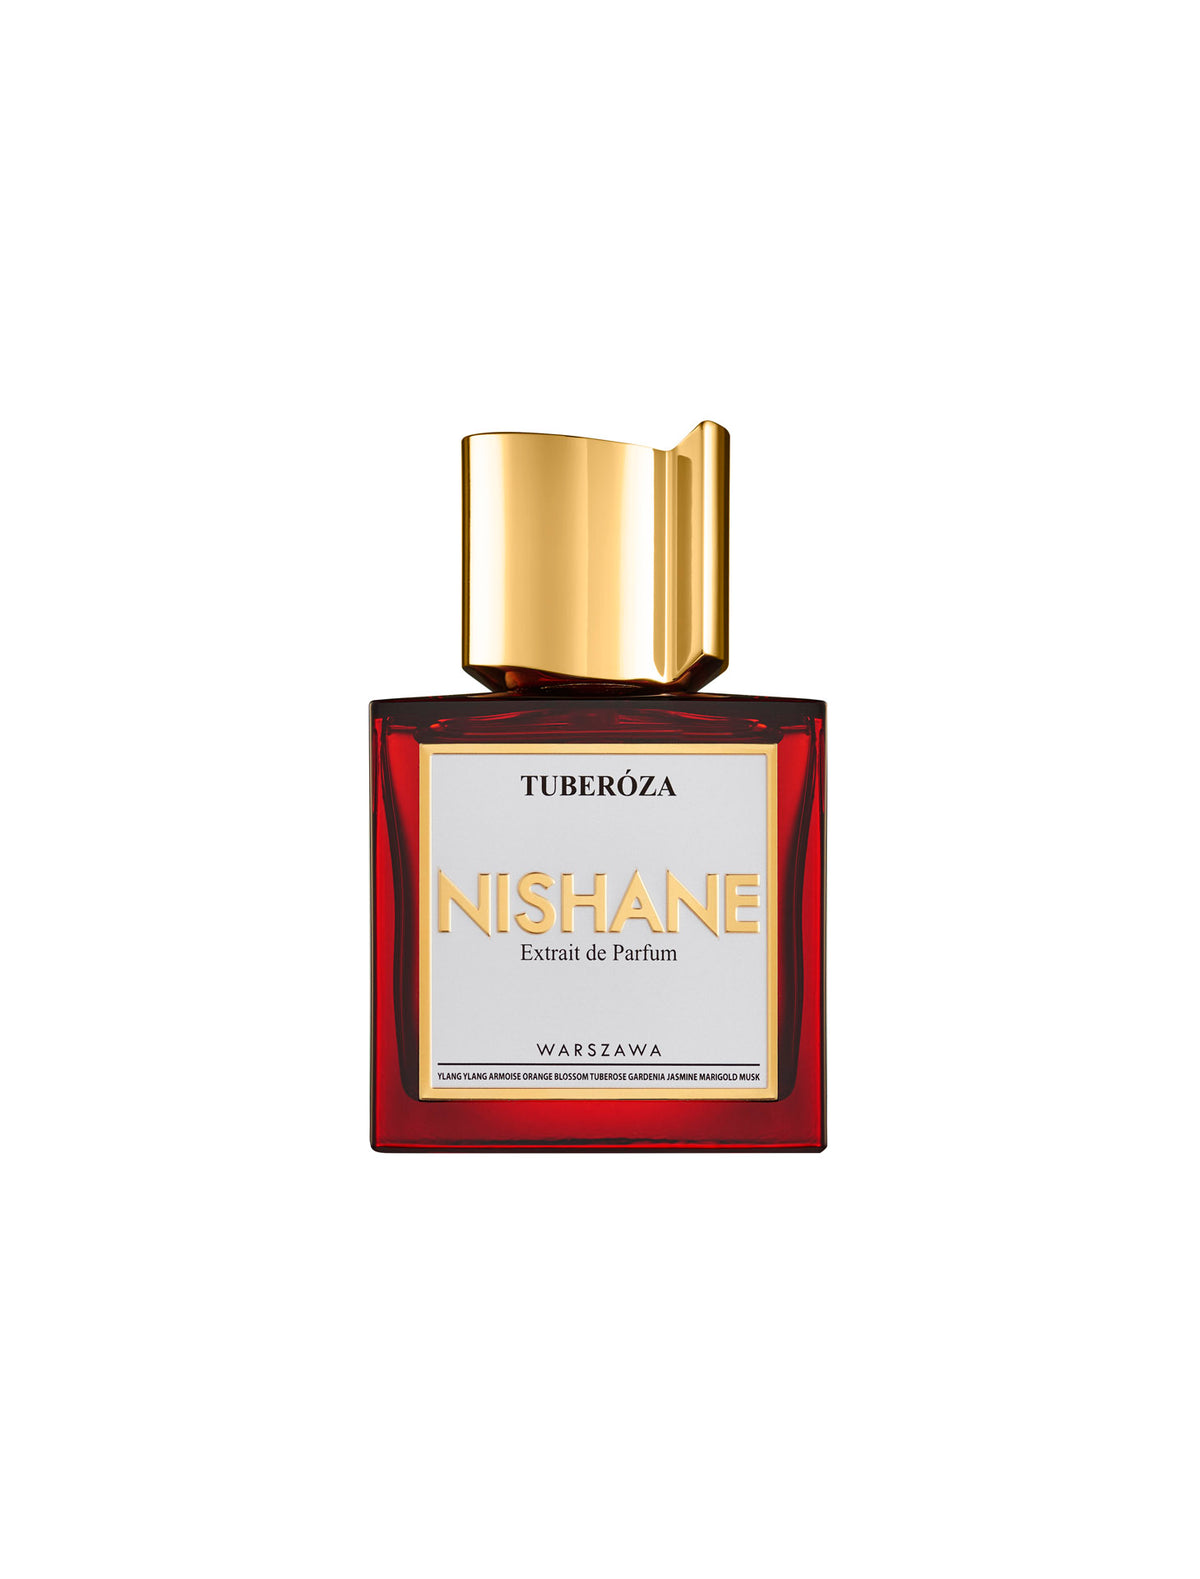 Nishane Tuberóza Extrait de Parfum 50ML